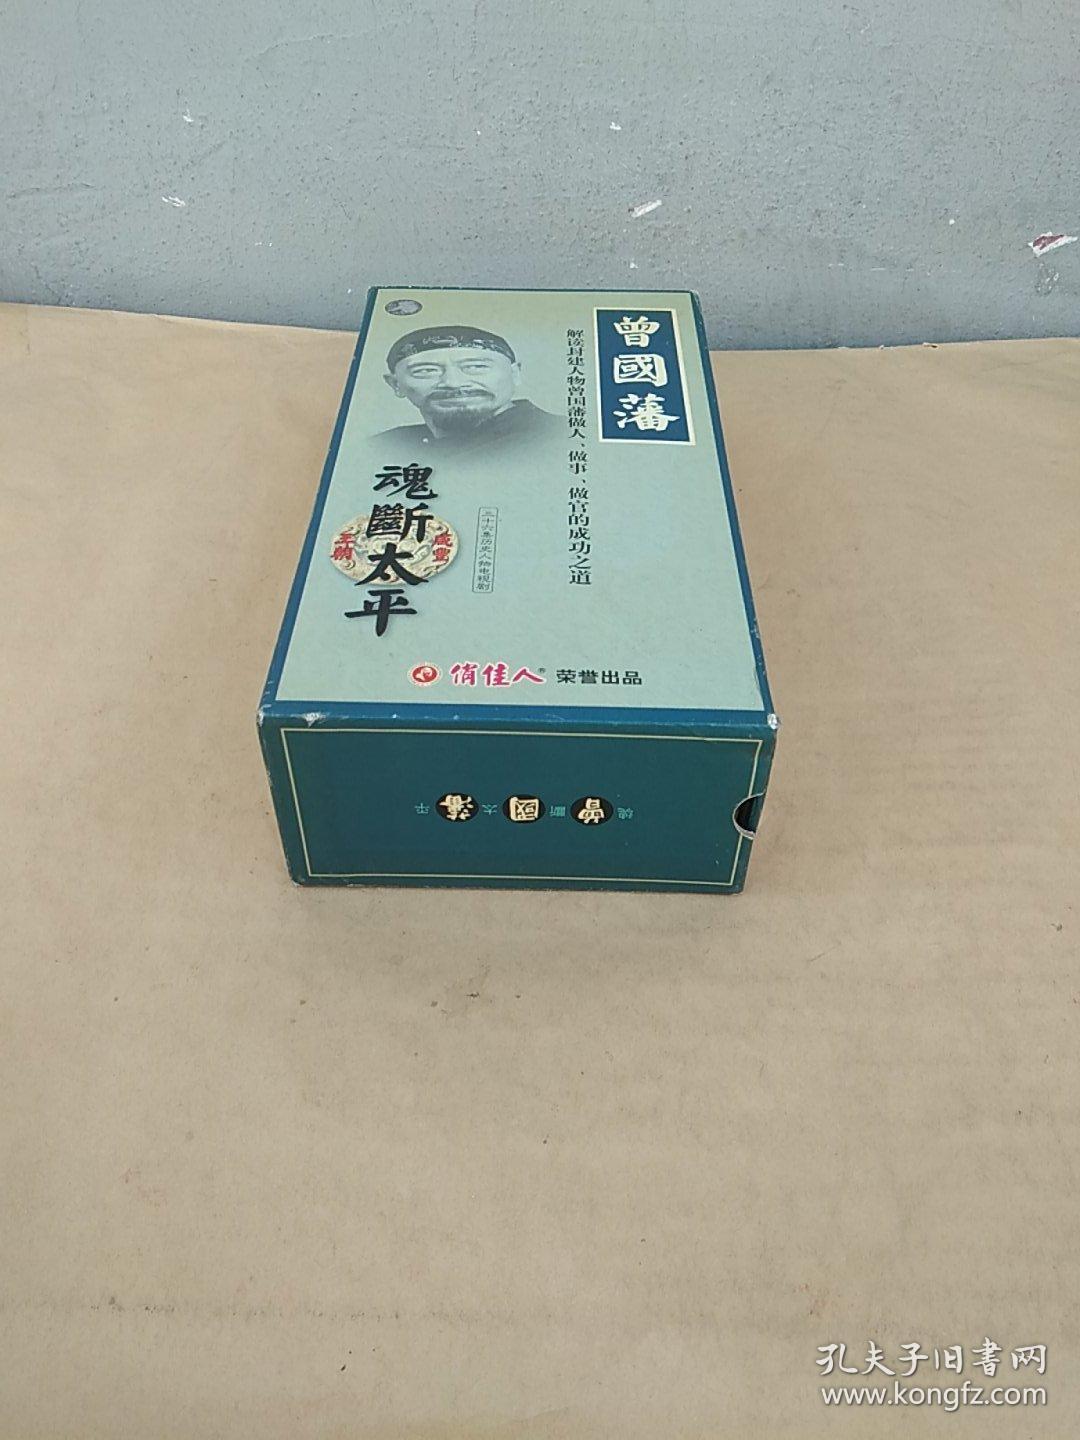 曾国潘 魂断太平 36碟VCD【三十六集历史人物电视剧】盒装